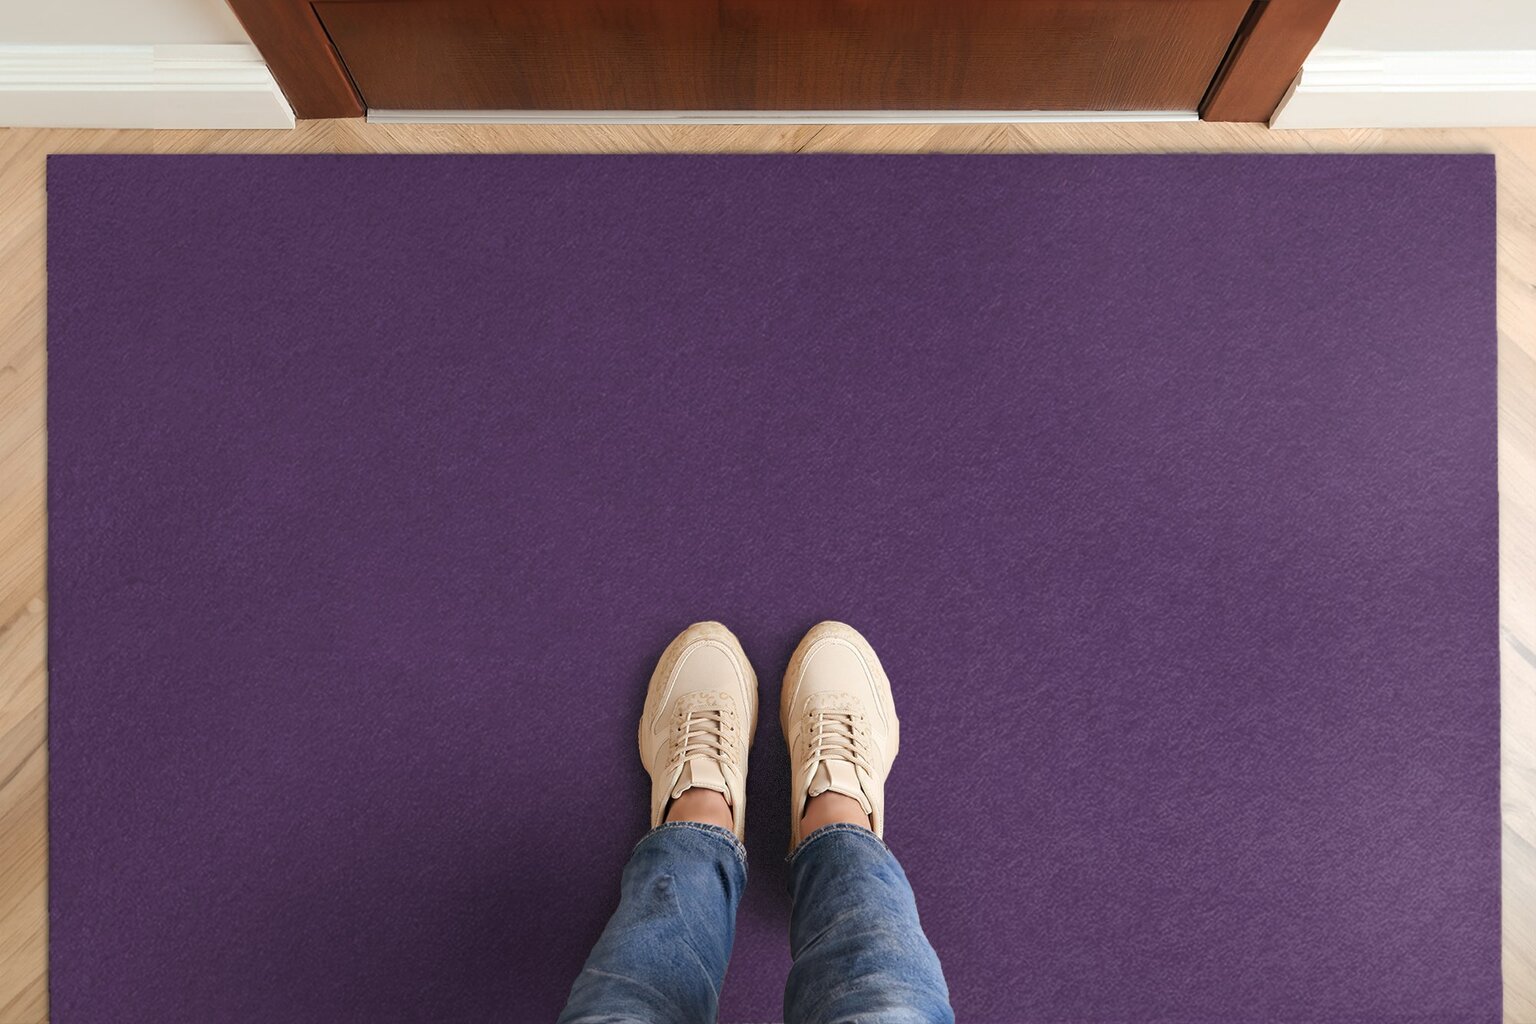 Durų kilimėlis Tamsi Violetinė 150x100 cm kaina ir informacija | Durų kilimėliai | pigu.lt